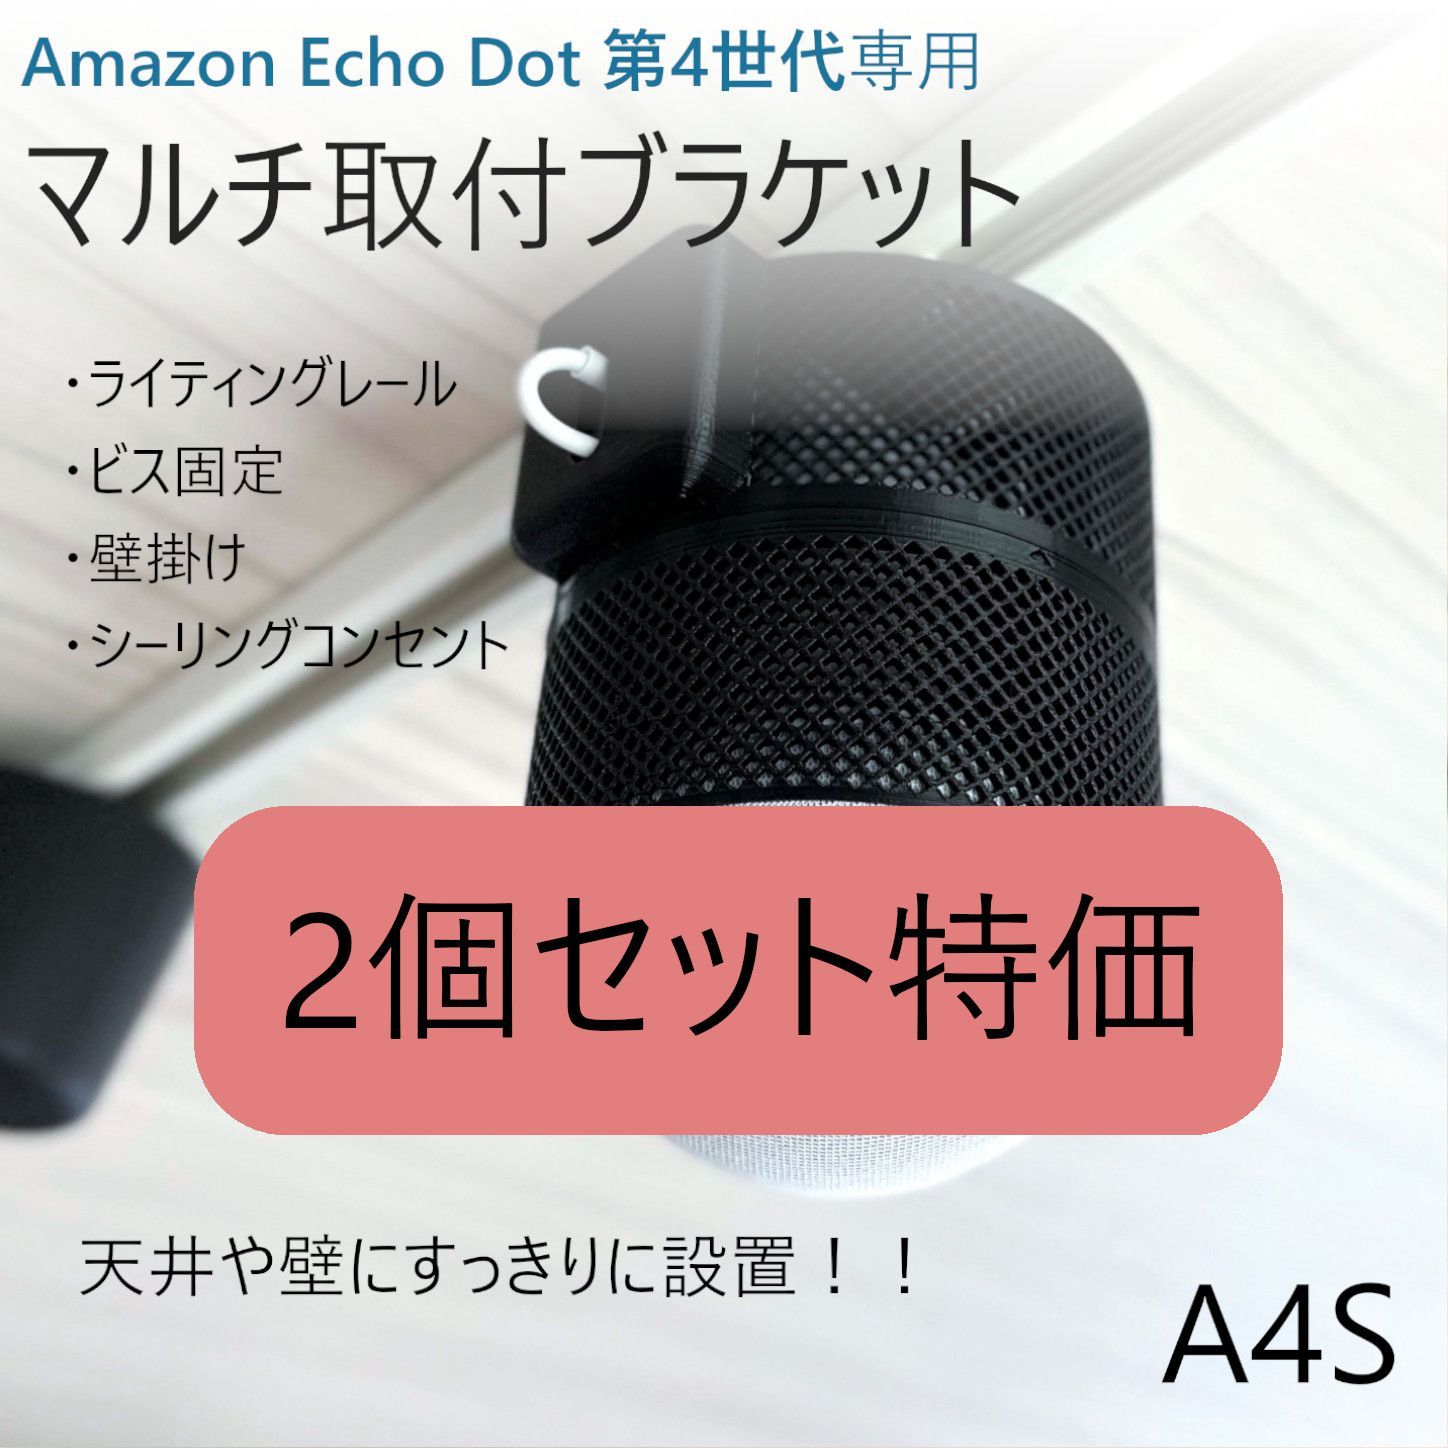 【2個】Amazon Echo 第4世代 ライティング取付ブラケット[A4L]